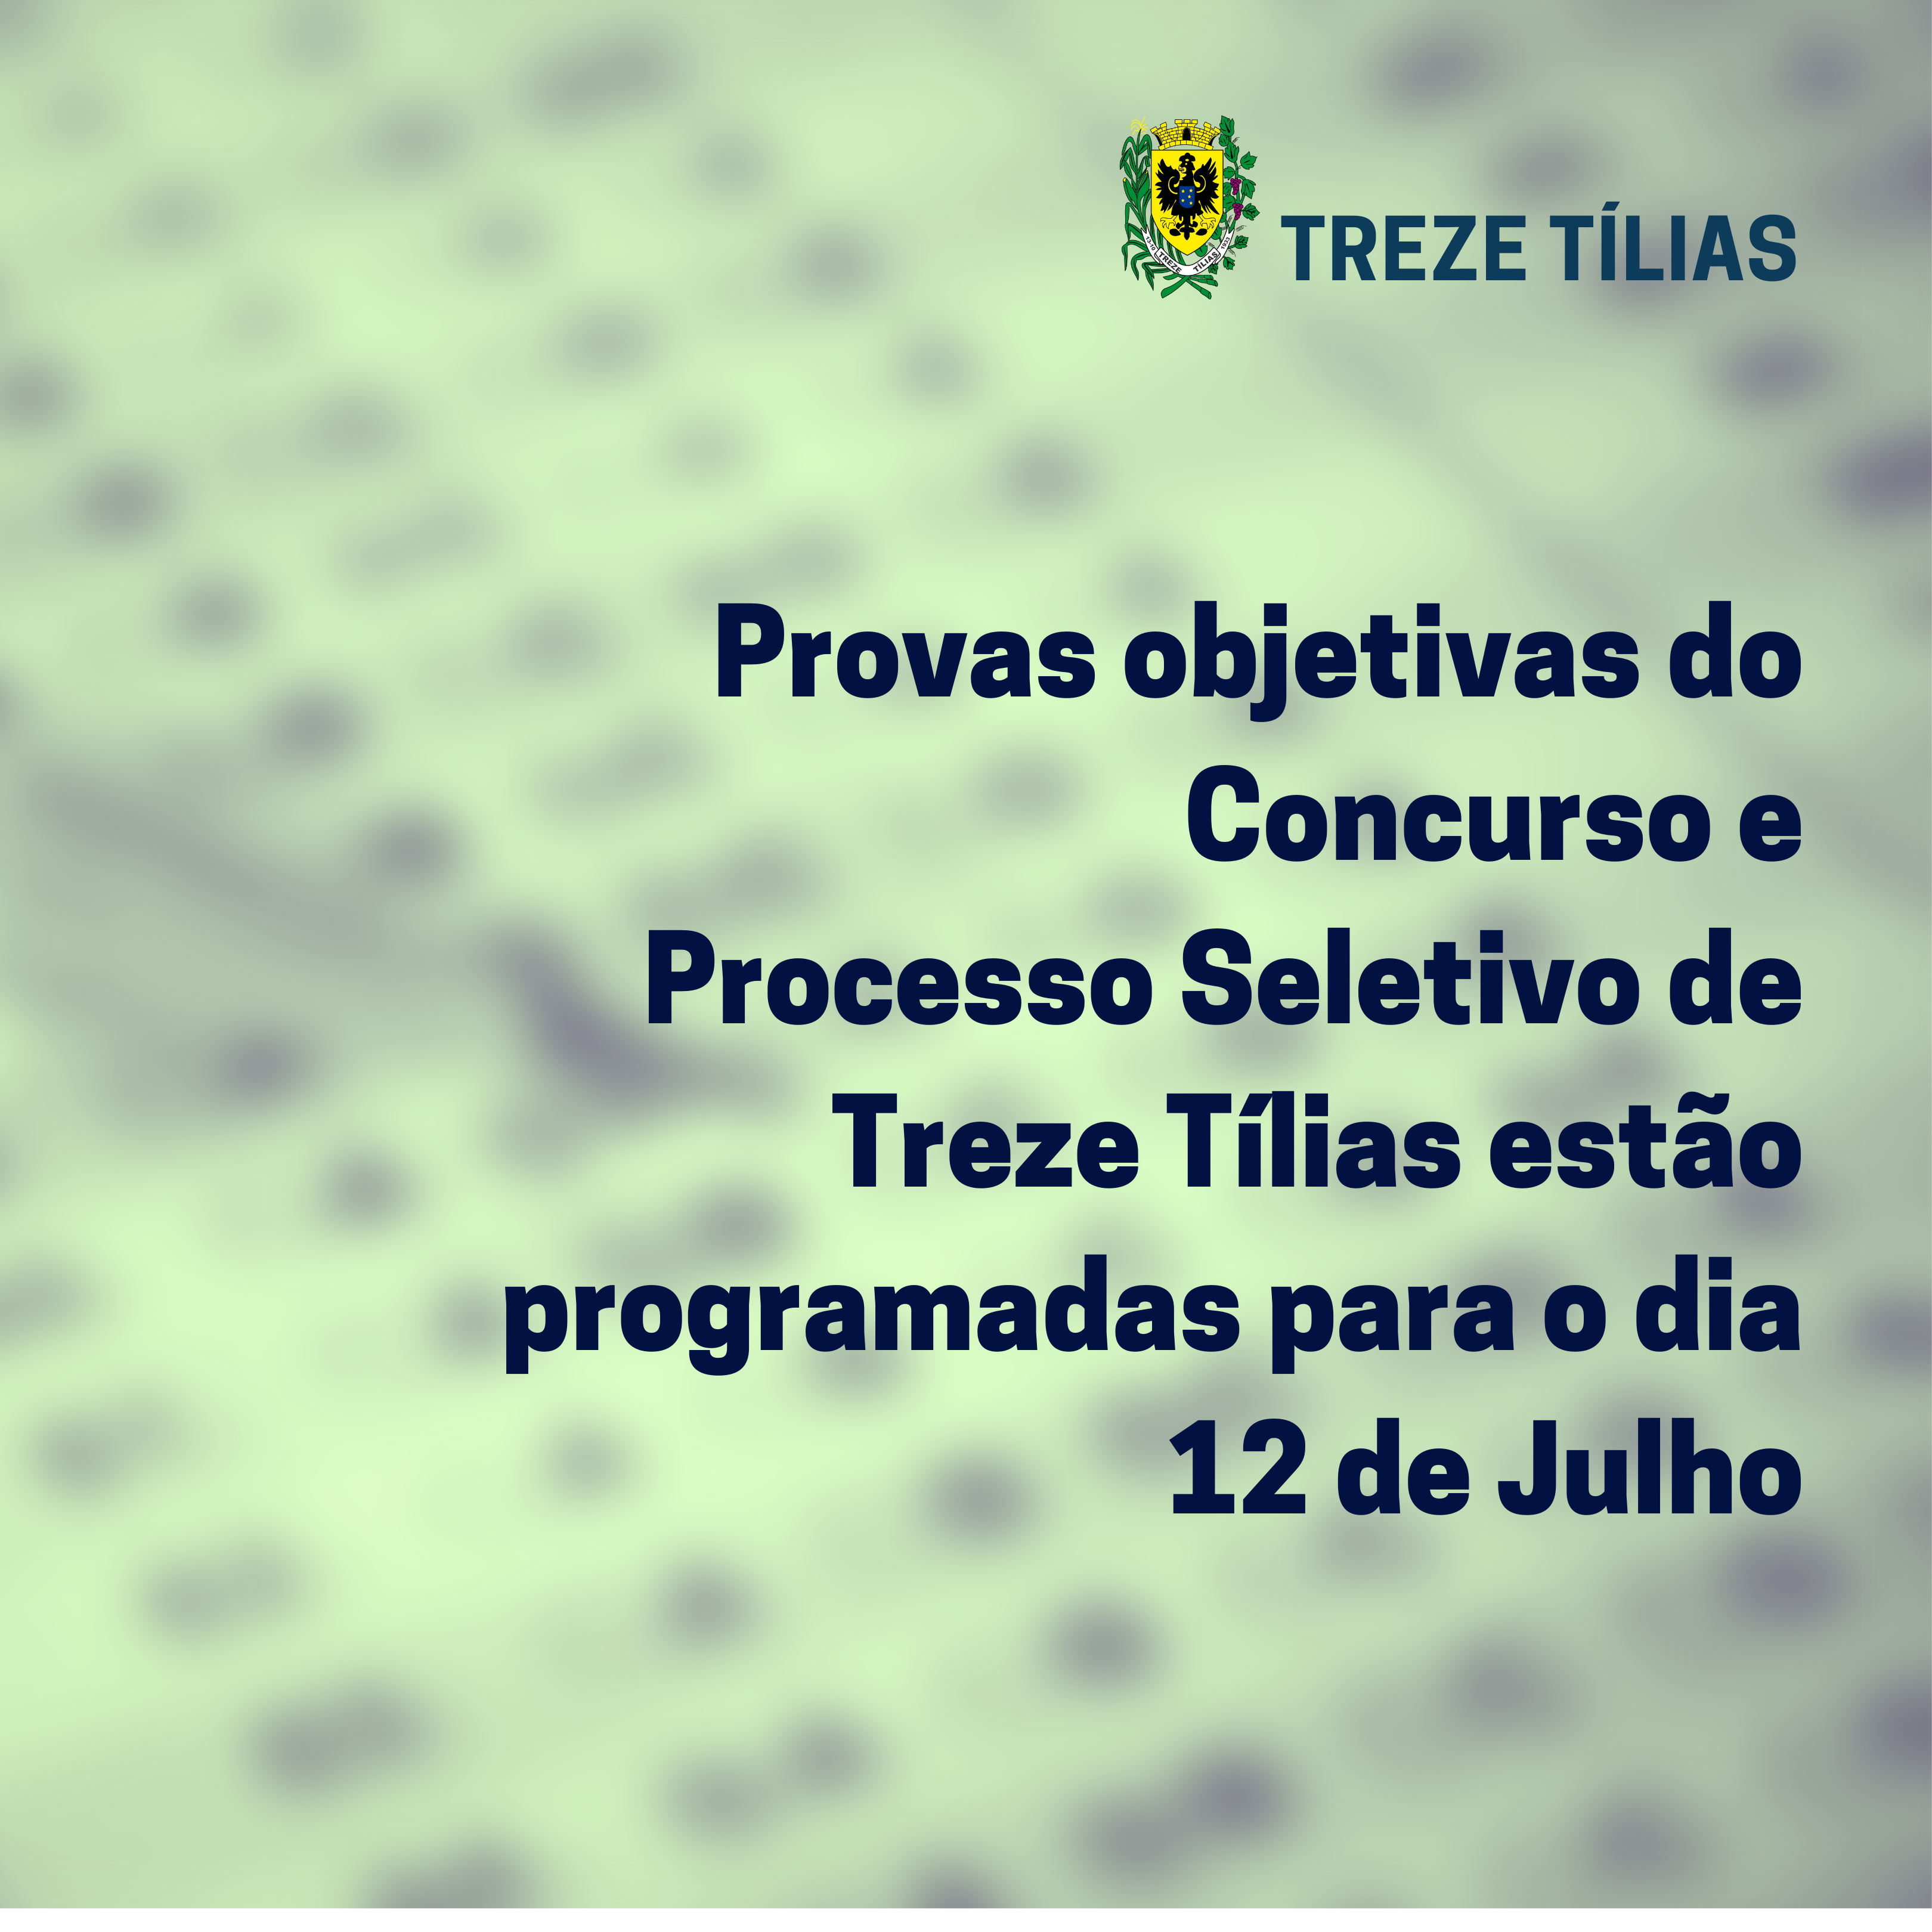 Provas objetivas do Concurso e Processo Seletivo de Treze Tílias estão programadas para o dia 12 de Julho